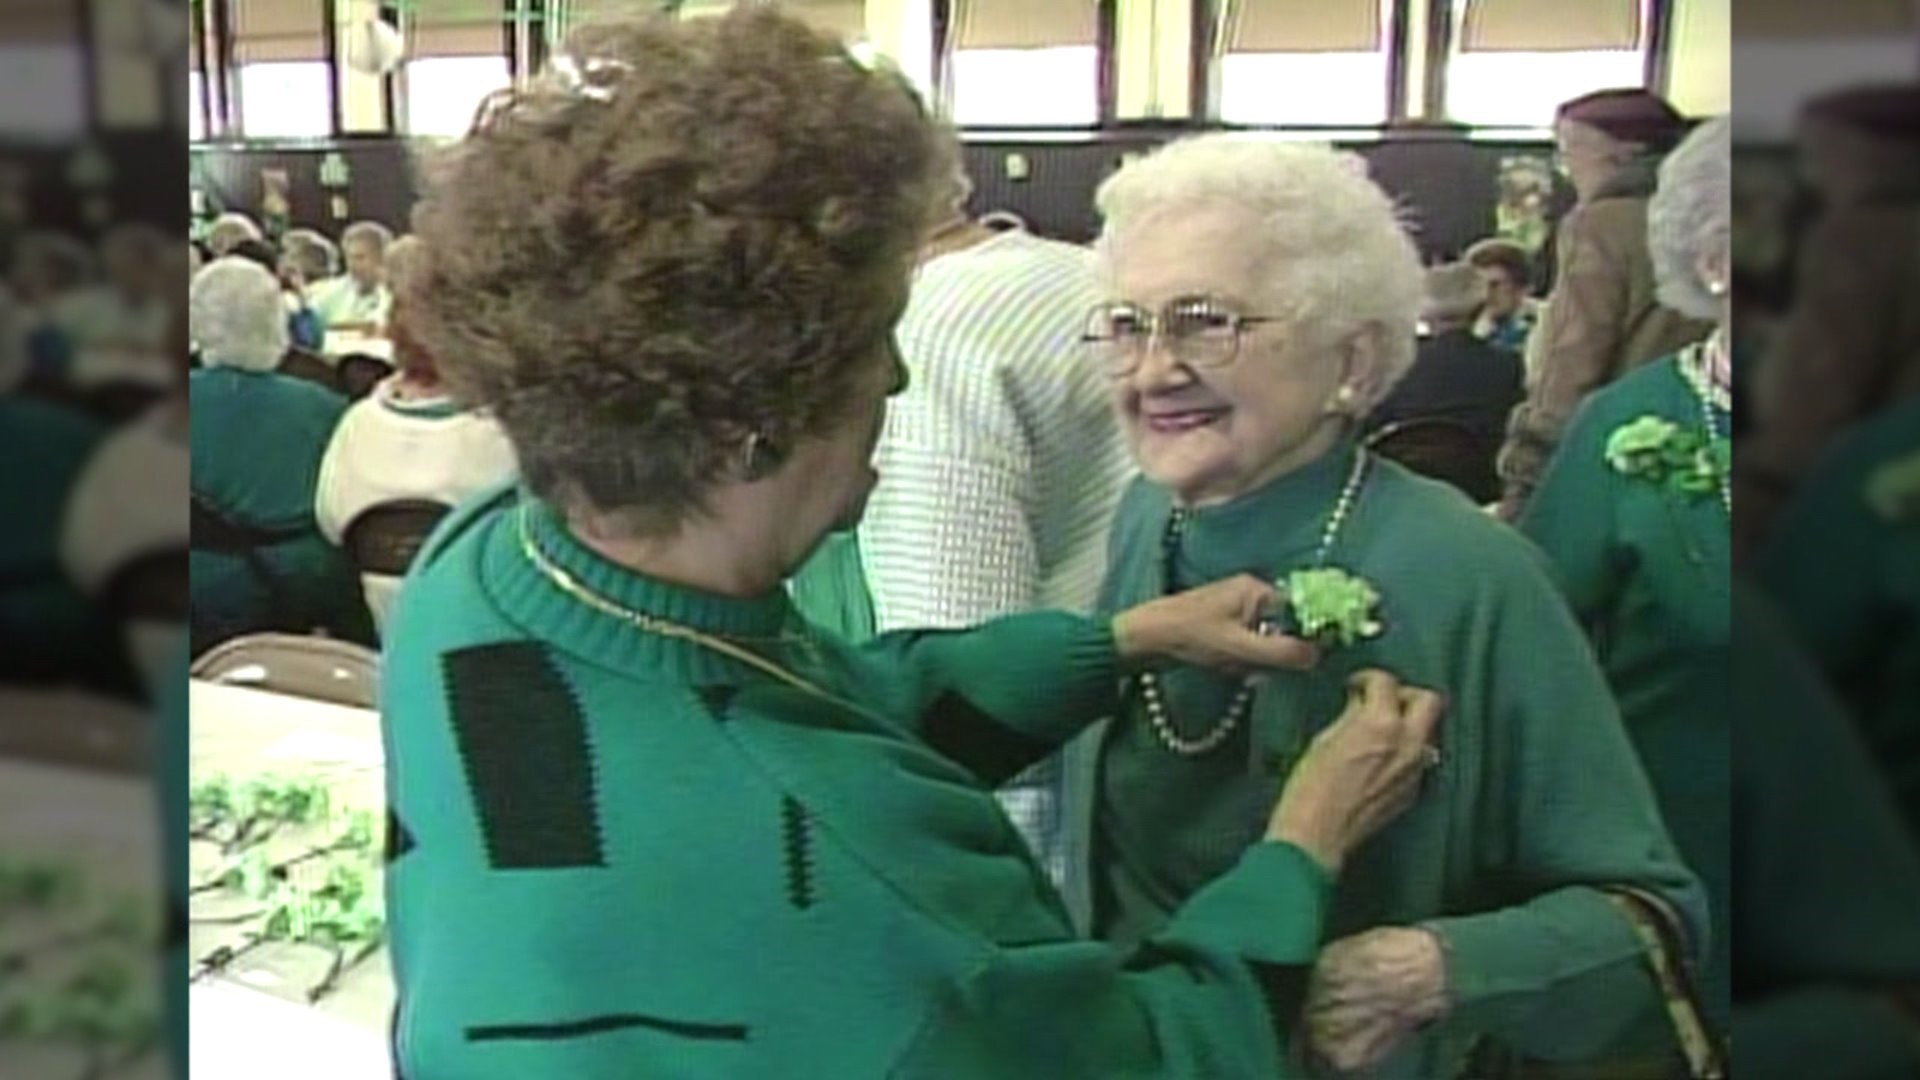 Celebrating St. Patrick in 1989